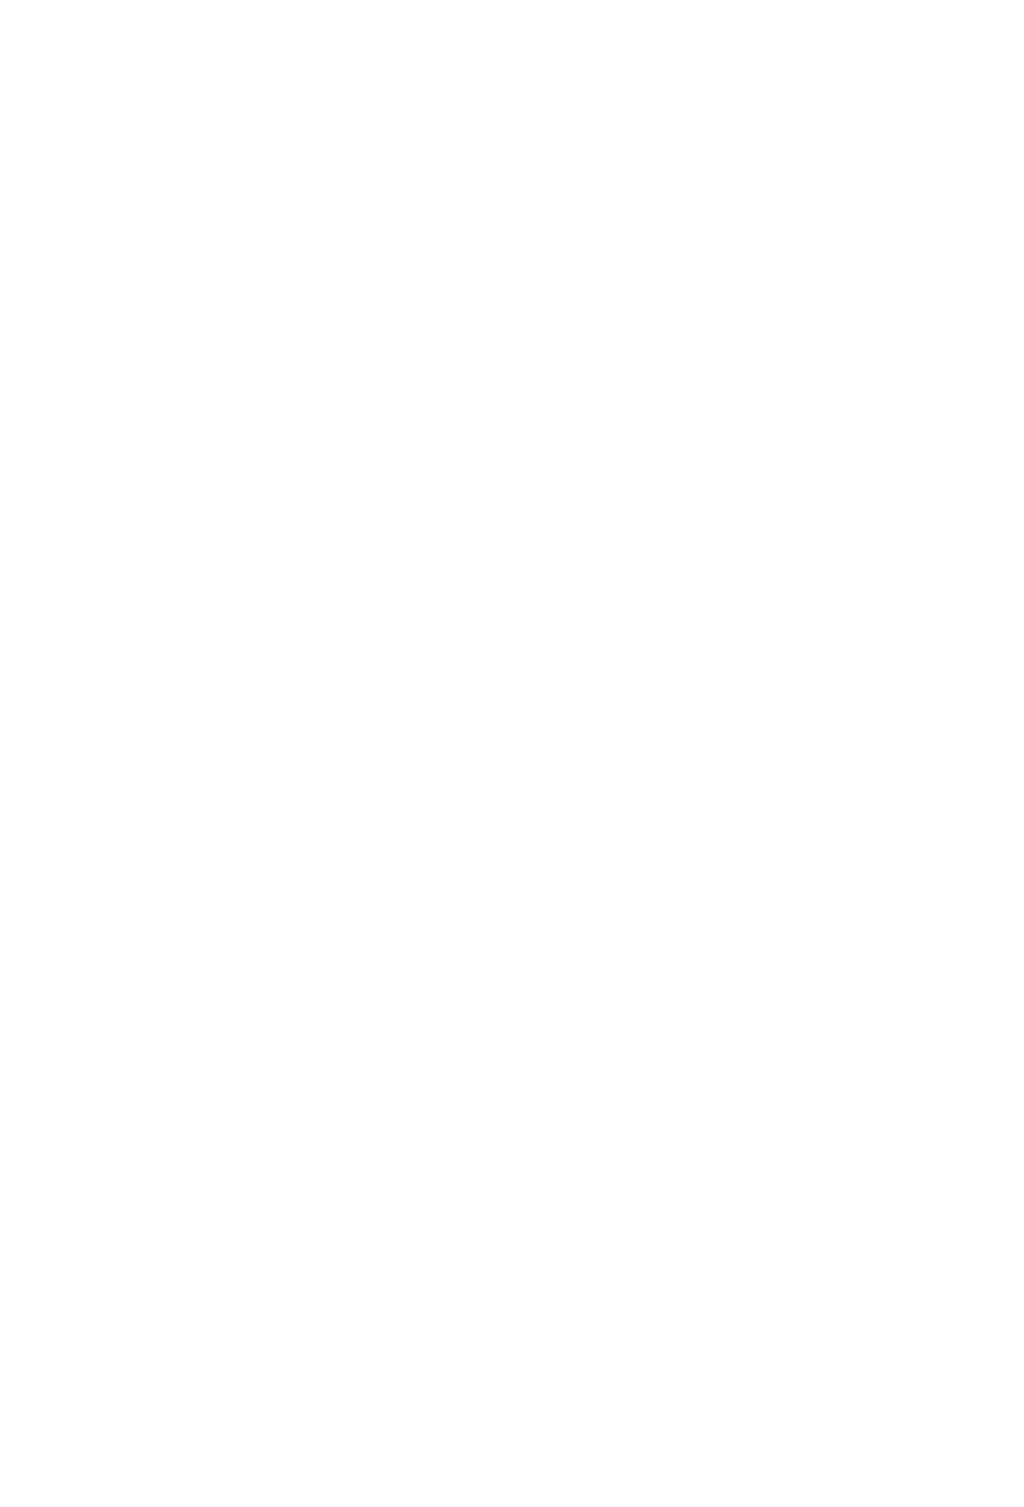 Black + Blue Tattoo